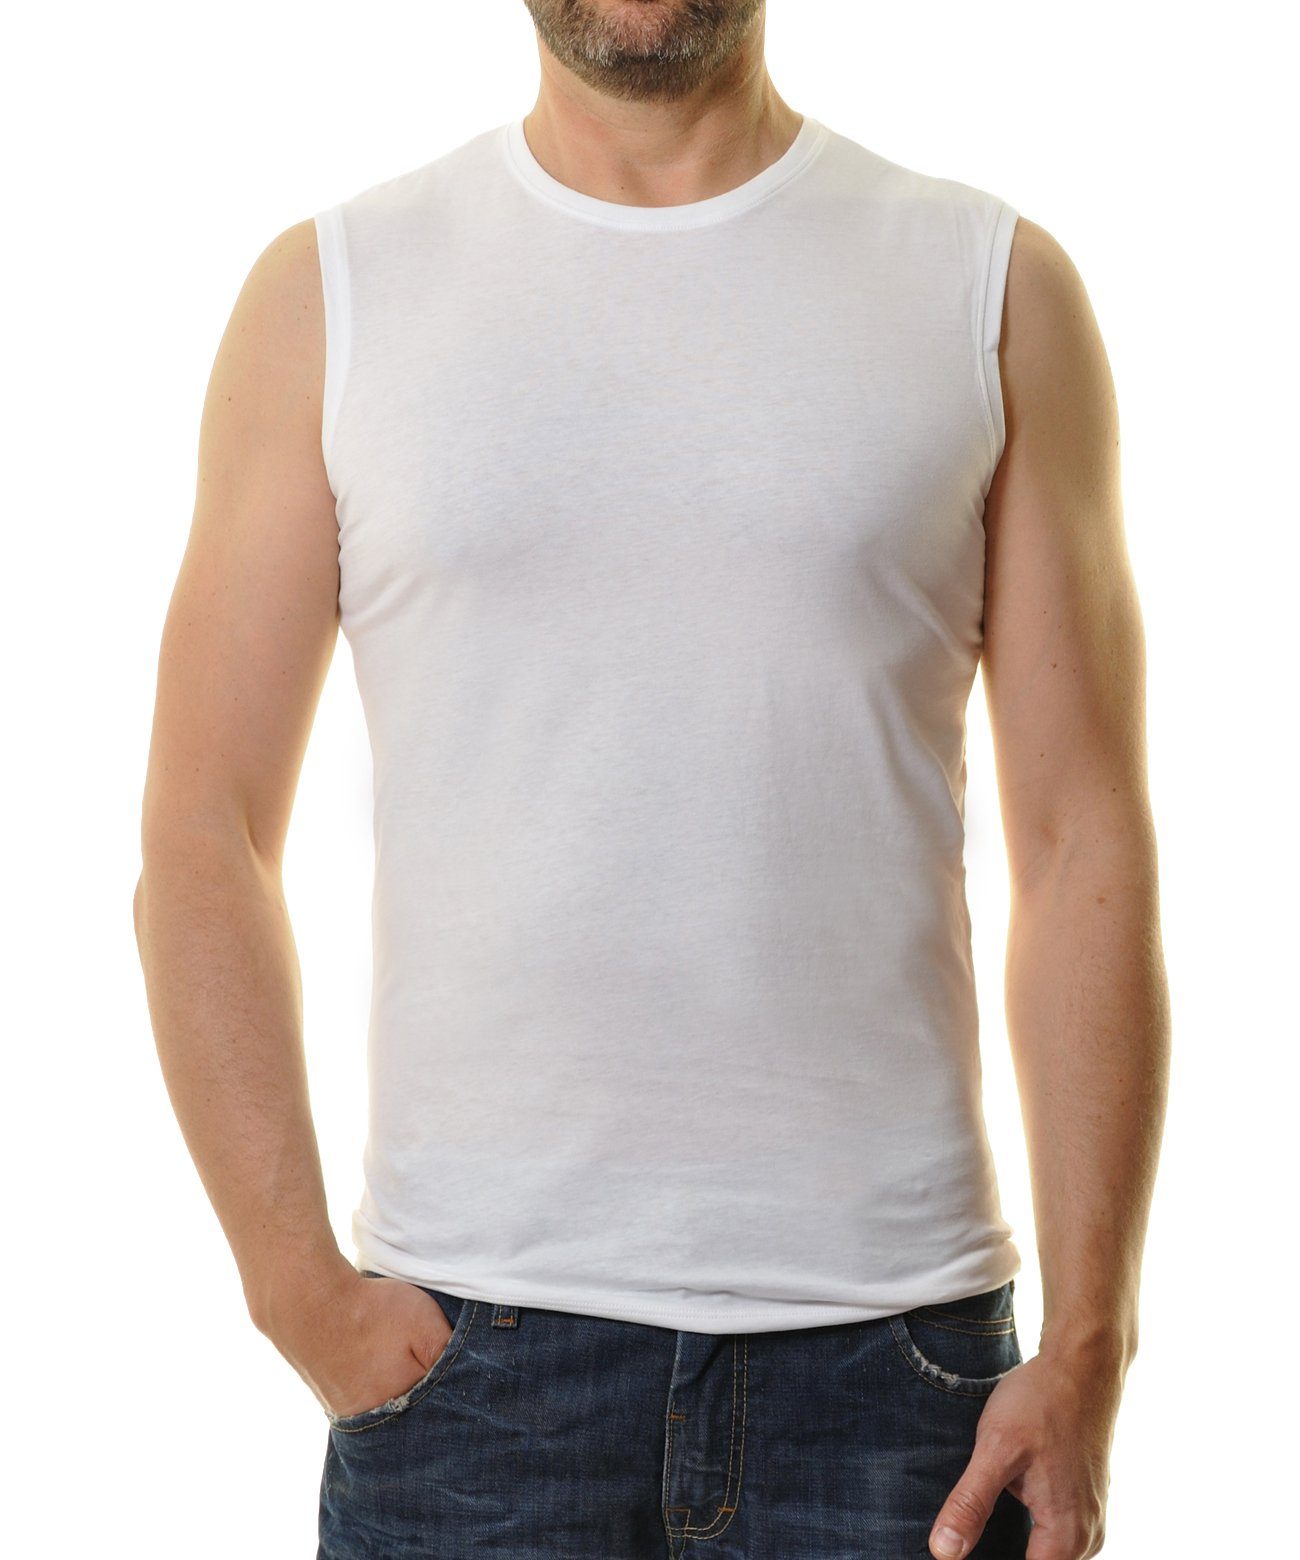 RAGMAN Muscleshirt (Packung) Weiss | Unterhemden